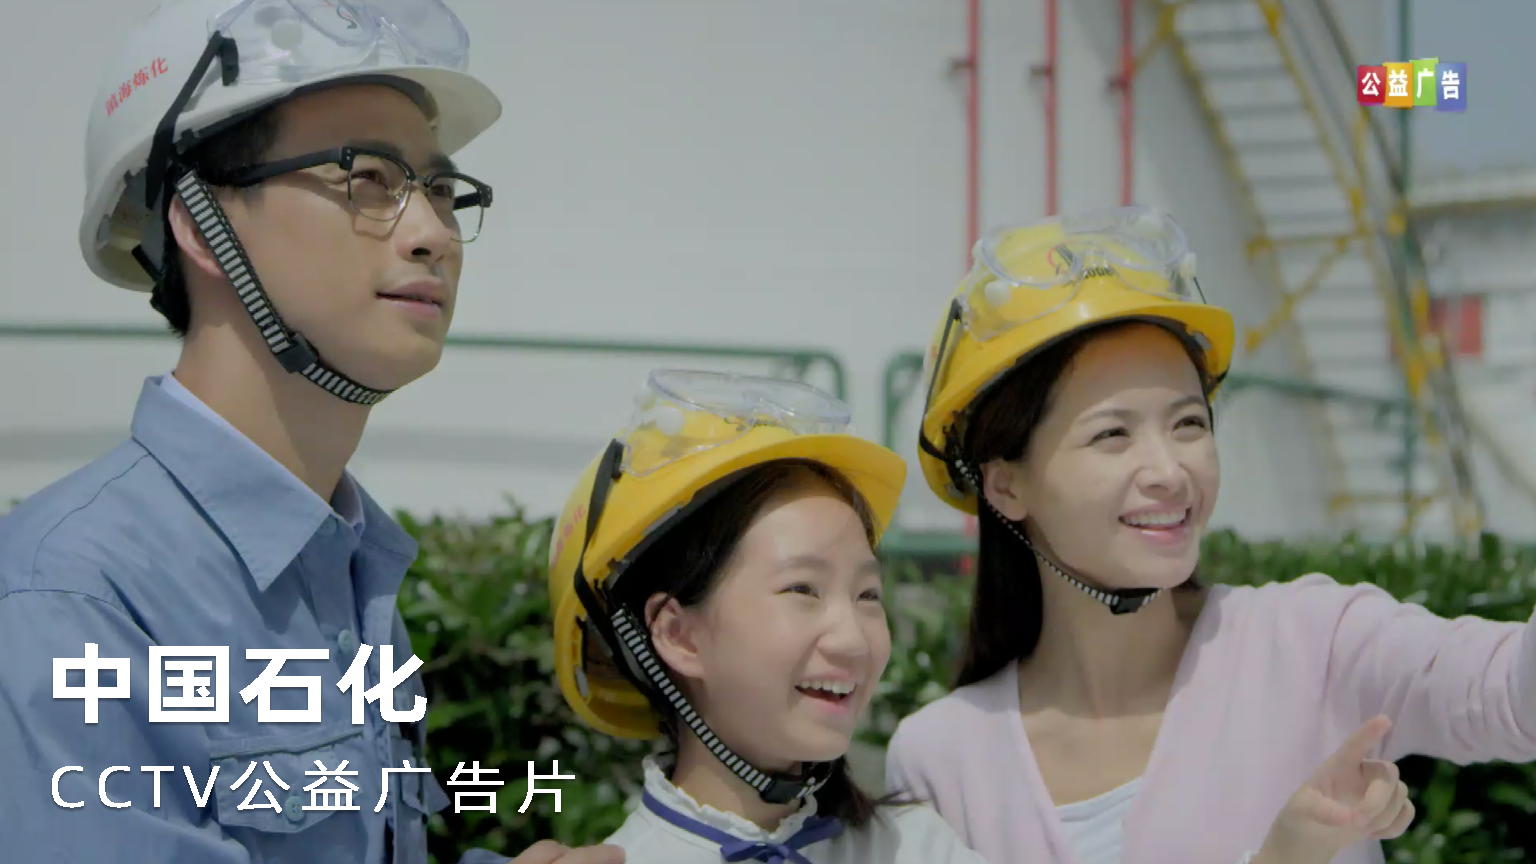 中国石化 CCTV公益广告片广告片TVC